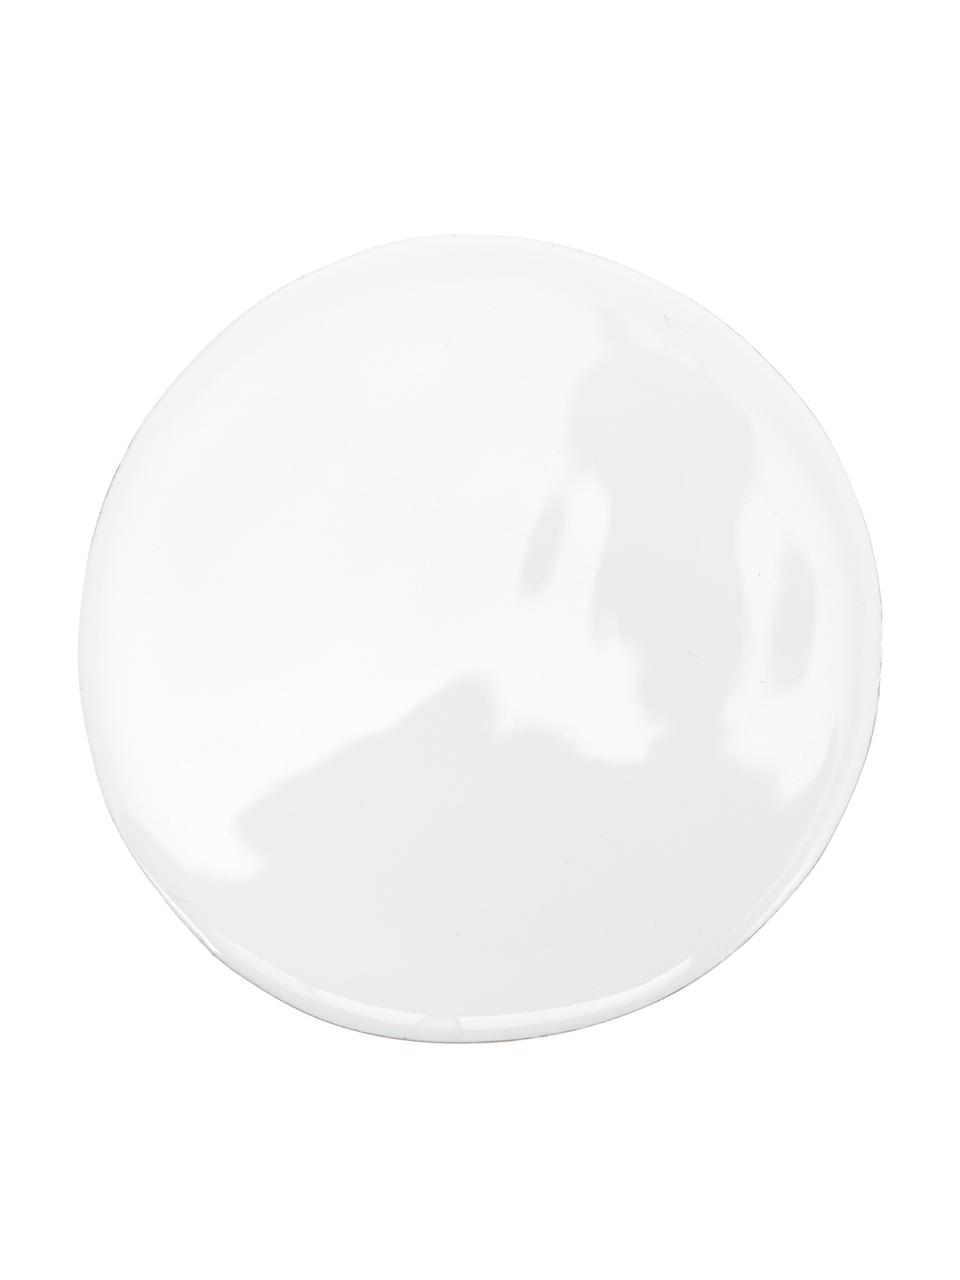 Weiße Untersetzer Lugo aus Mangoholz, 4 Stück, Mangoholz, beschichtet, Weiß, Mangoholz, Ø 10 x H 2 cm